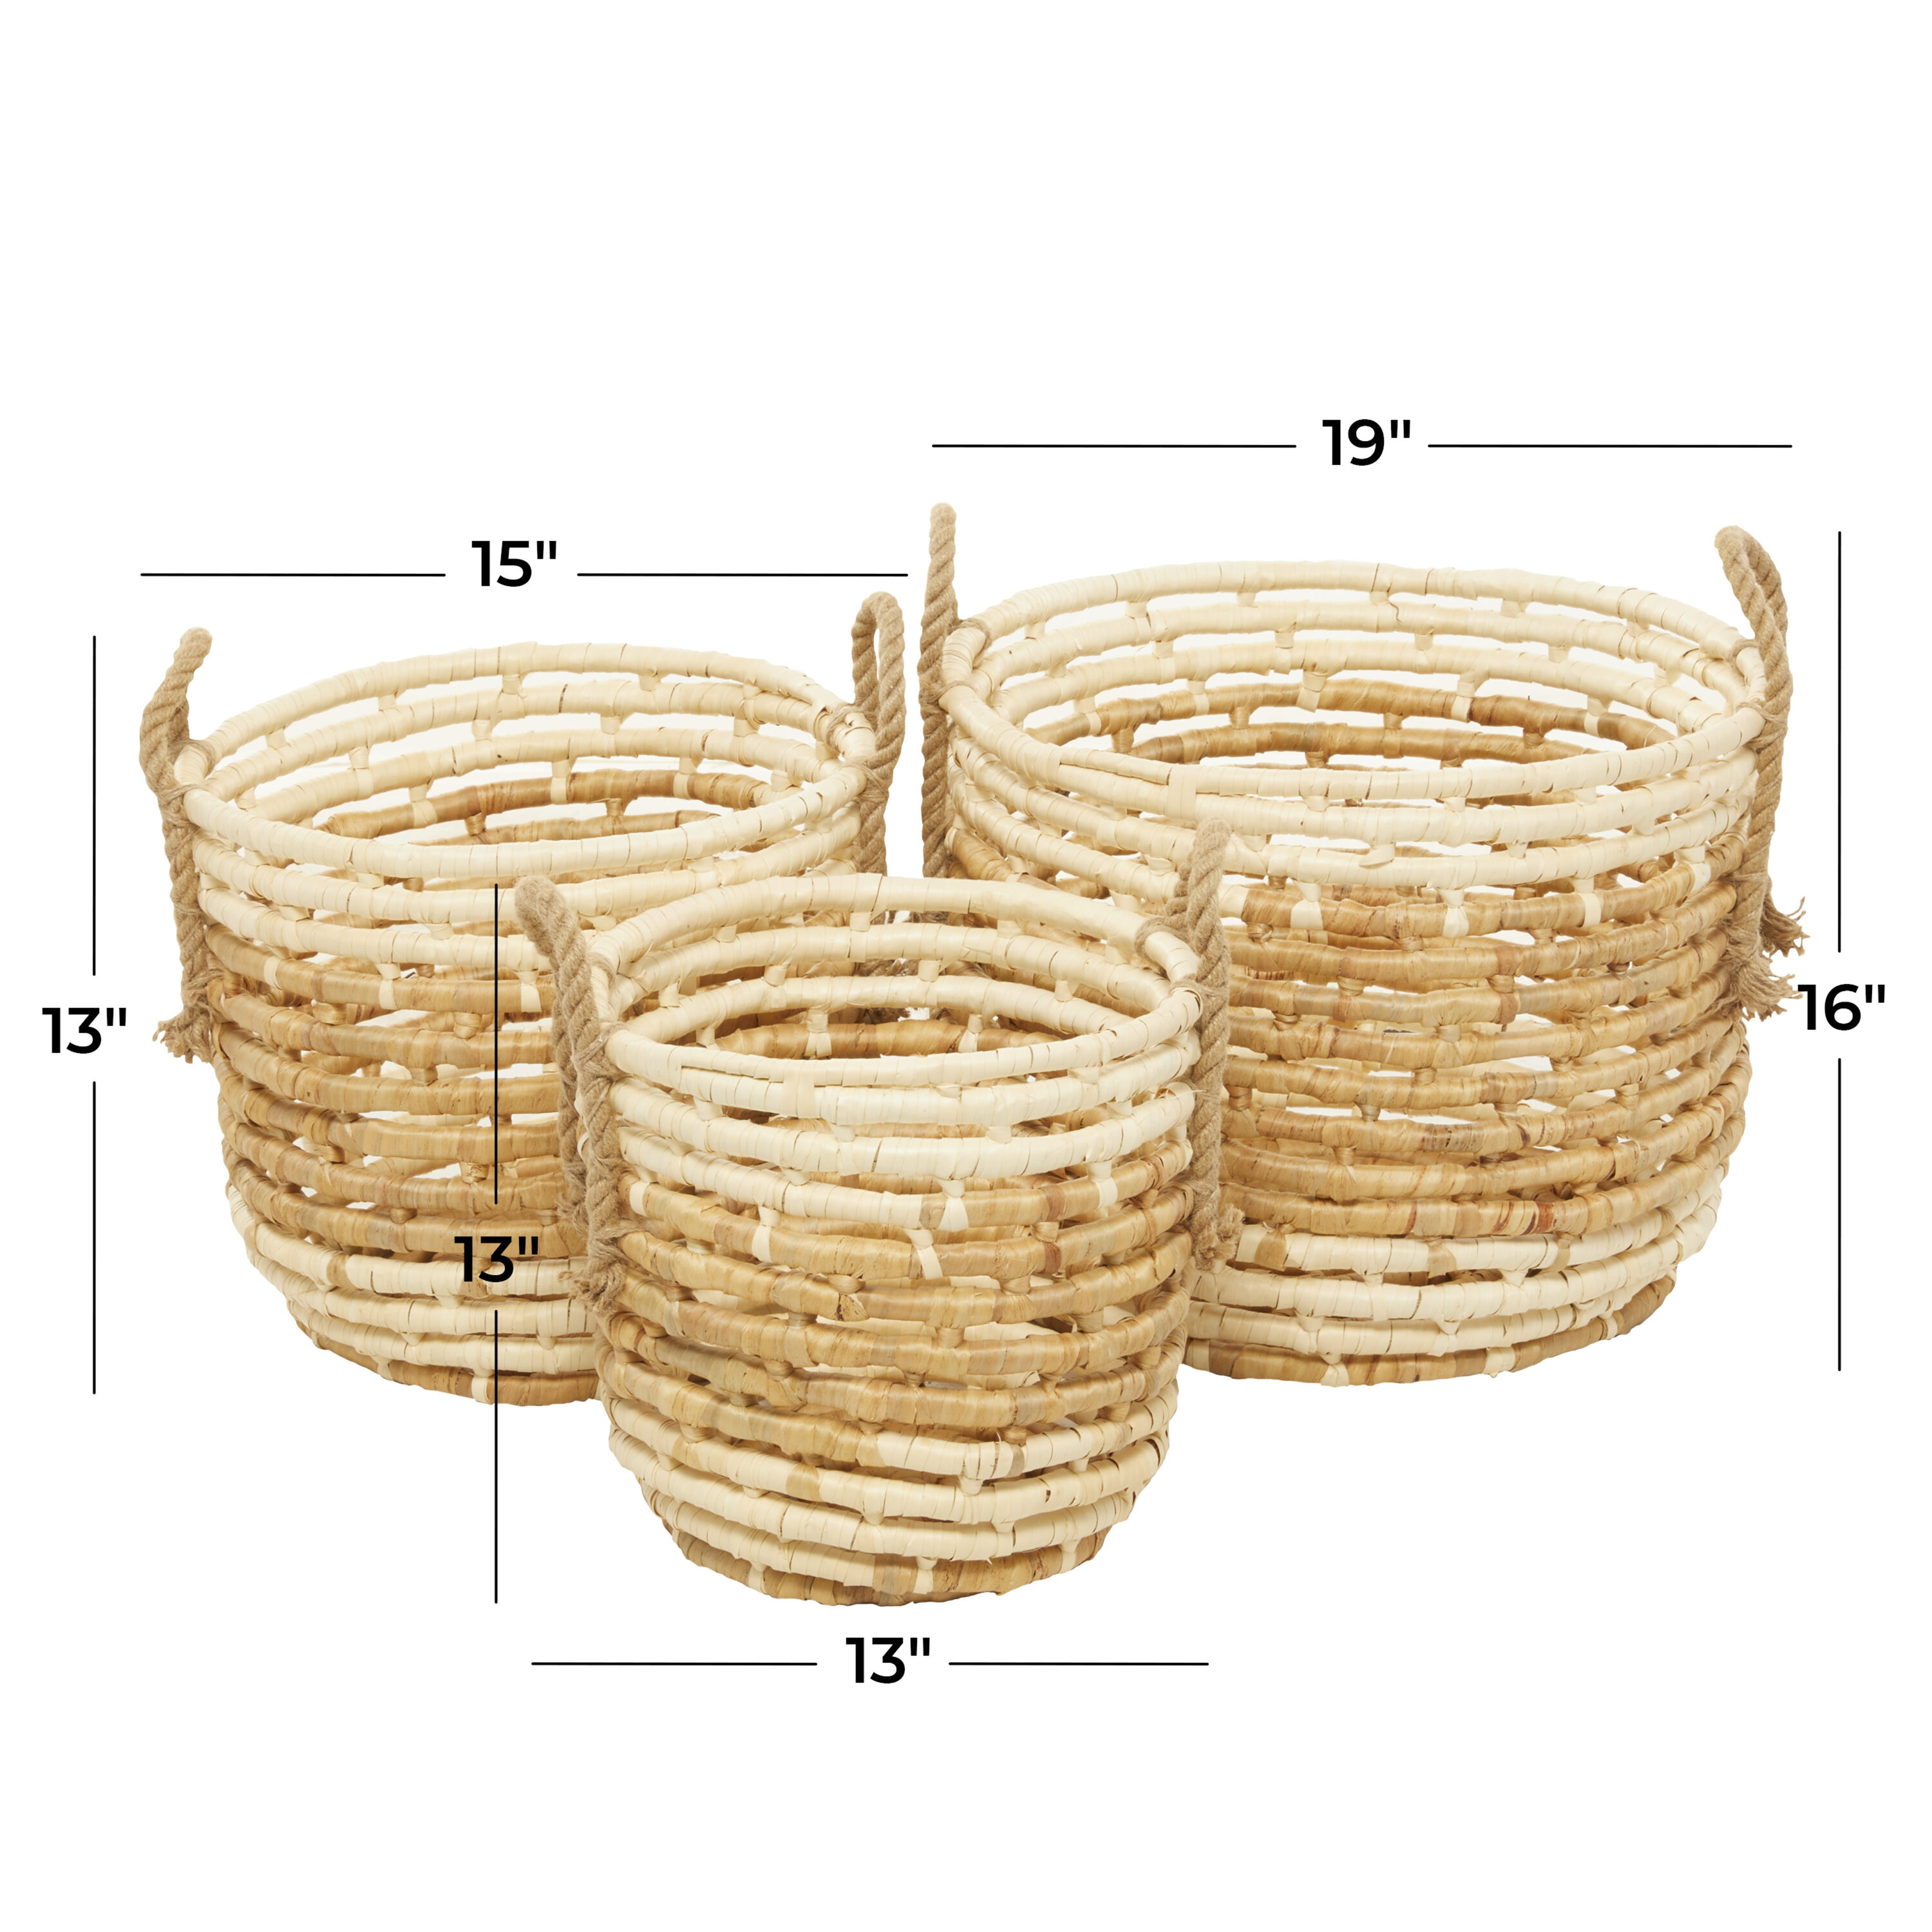 Off-white Storage Bins & Baskets at